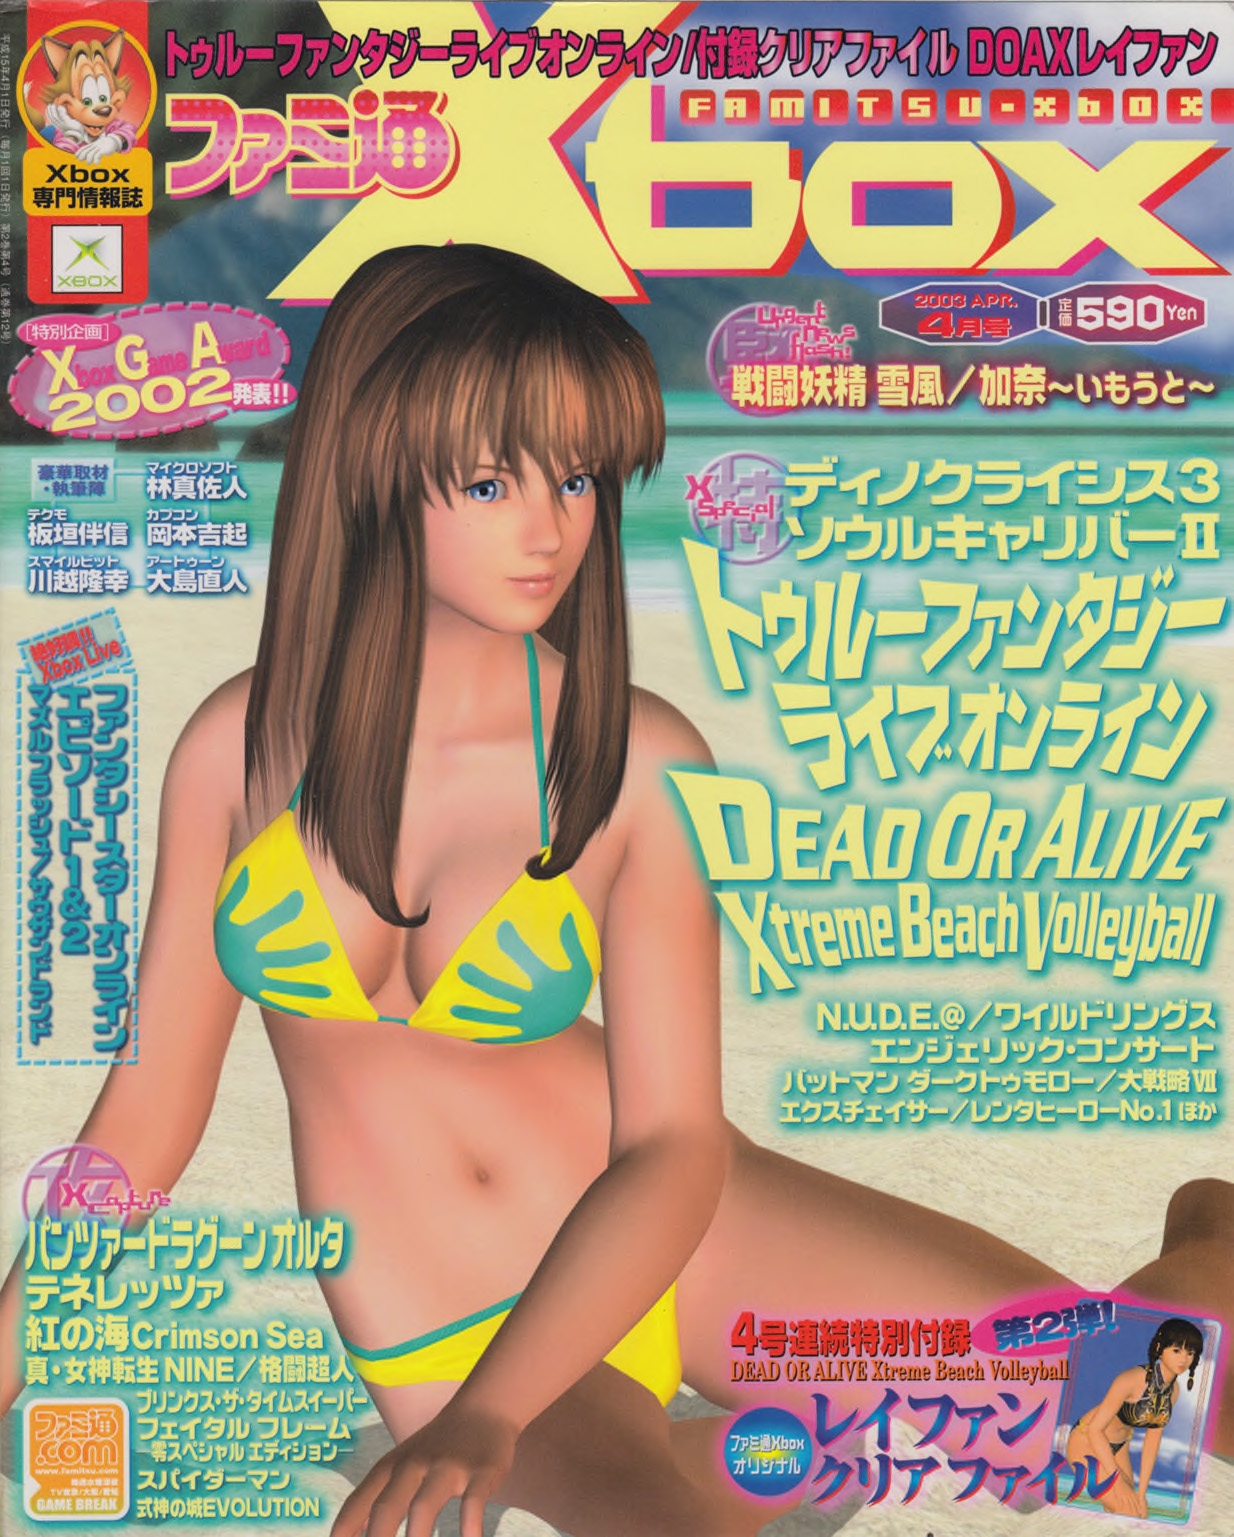 Famitsu_Xbox_2003-04_jp2 0